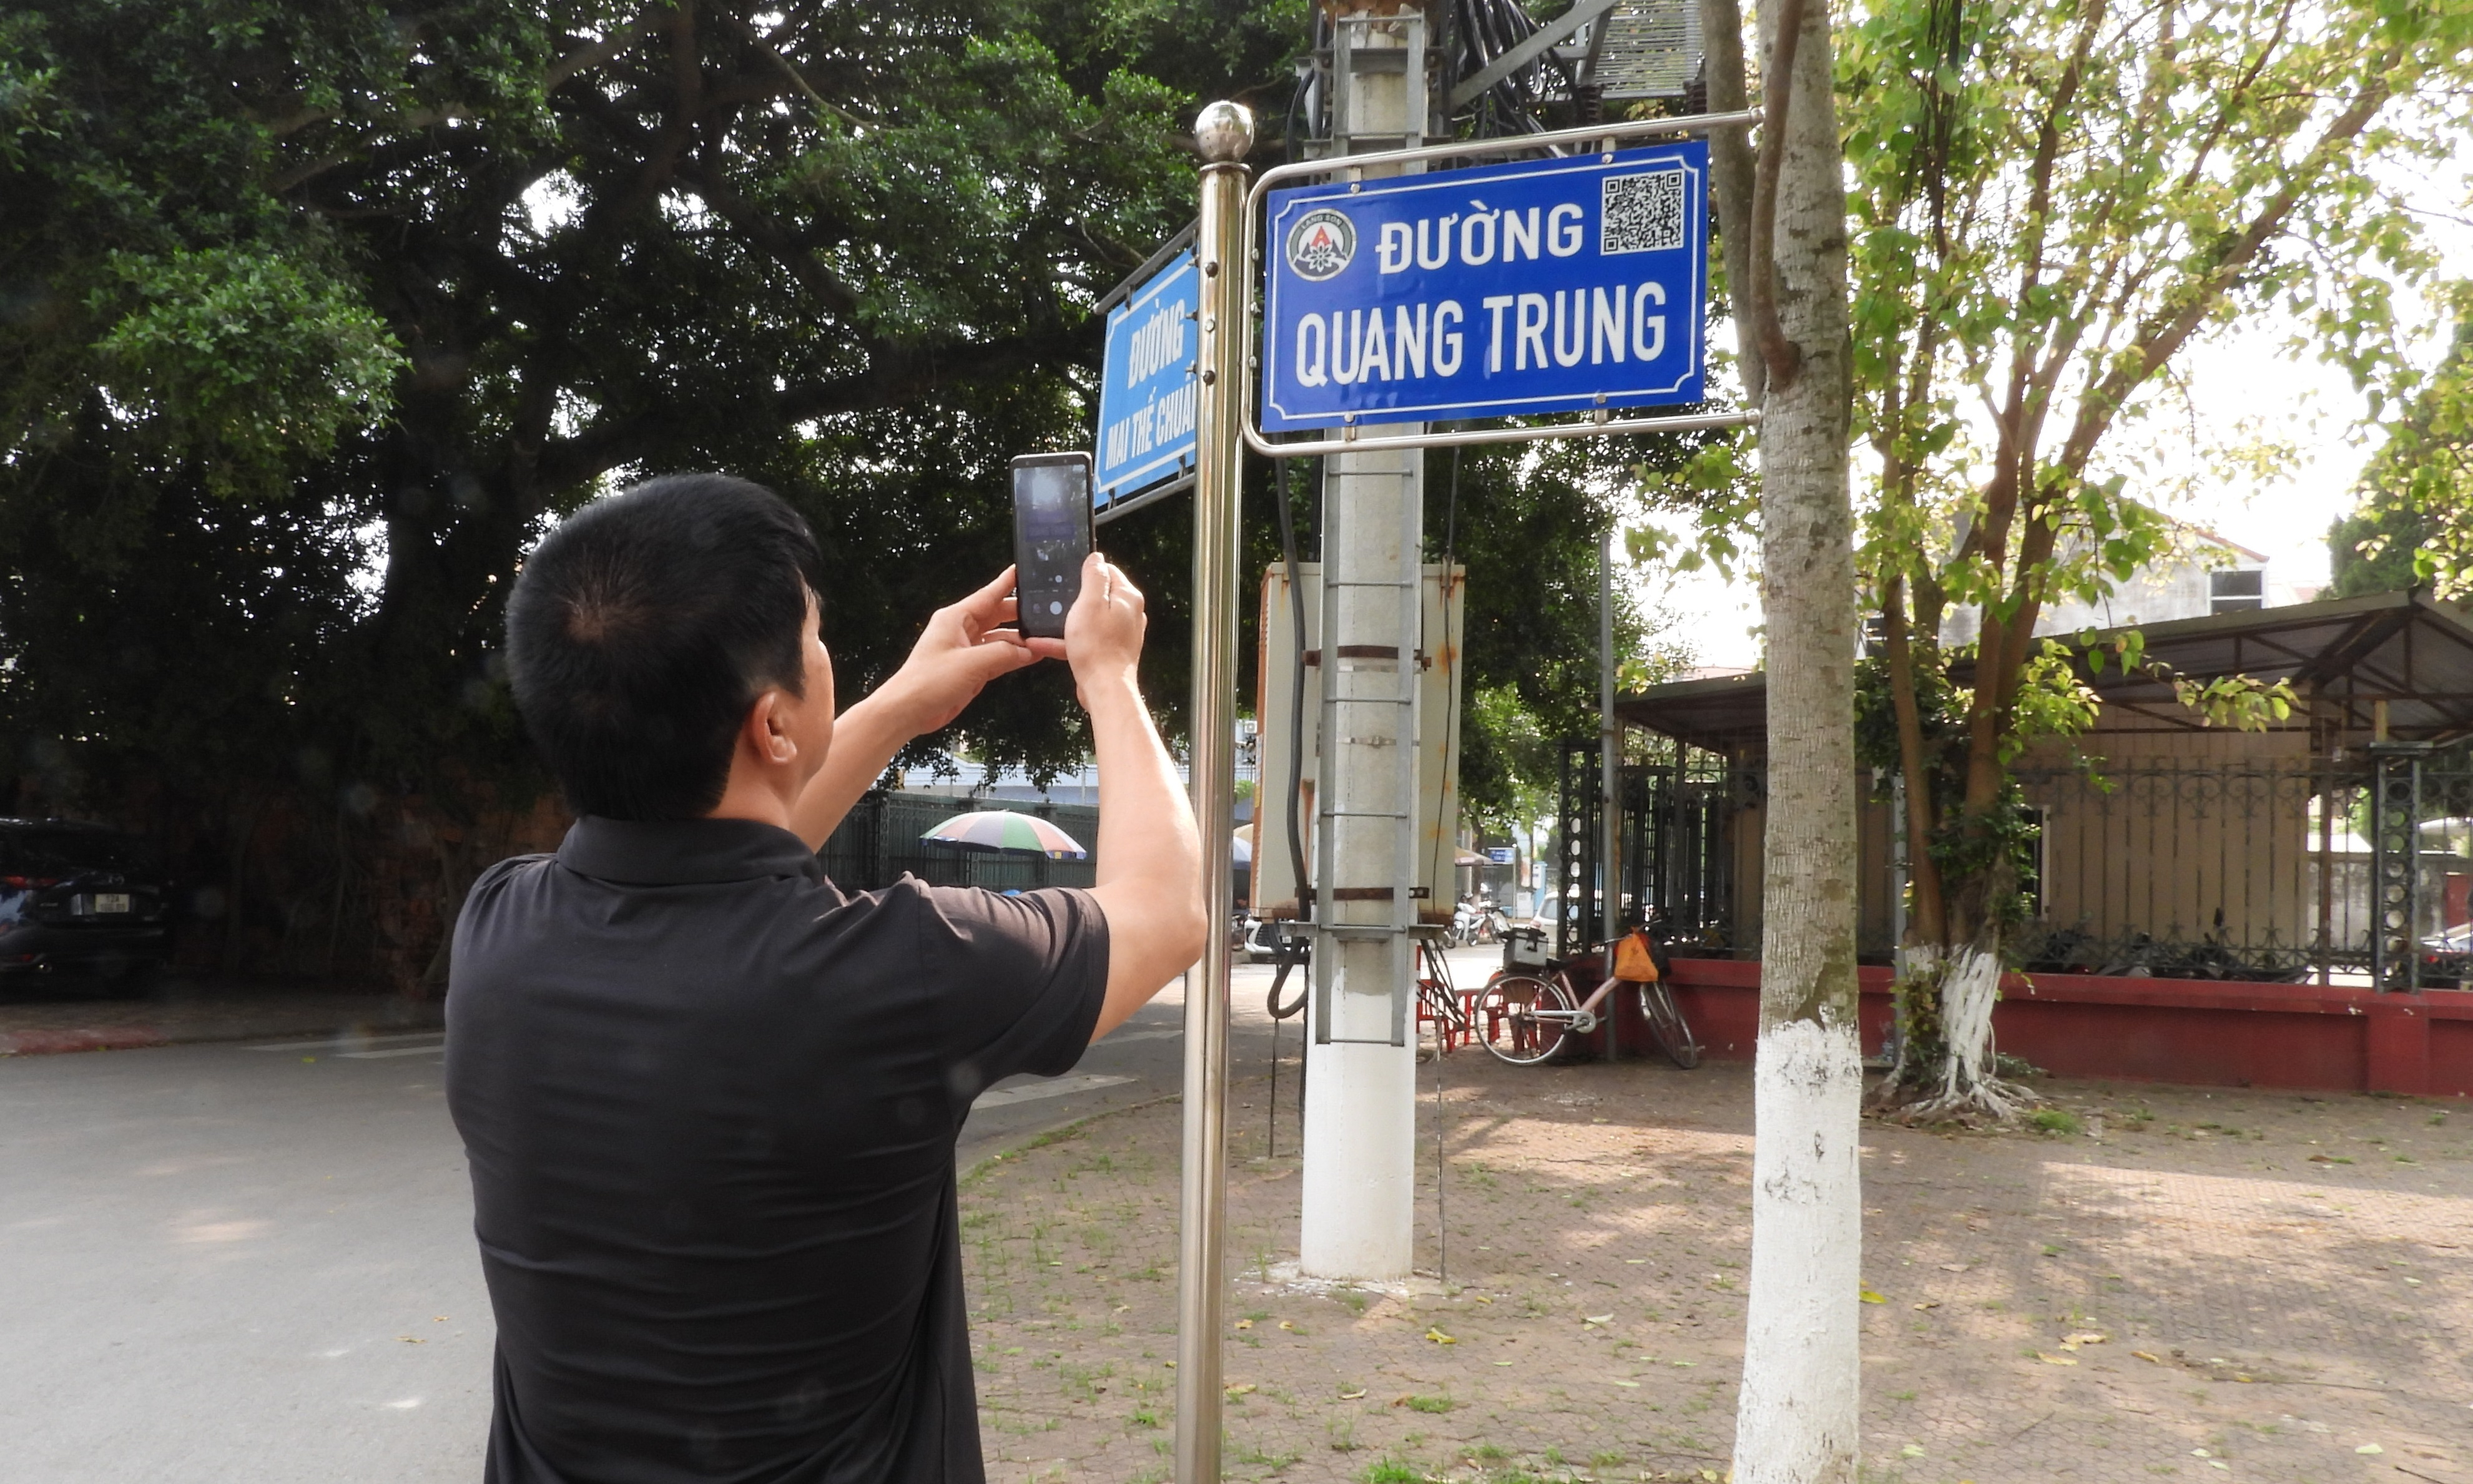 Người dân quét mã QR tra cứu thông tin từ các biển tên đường phố ở Lạng Sơn. Ảnh: Tùng Đinh.